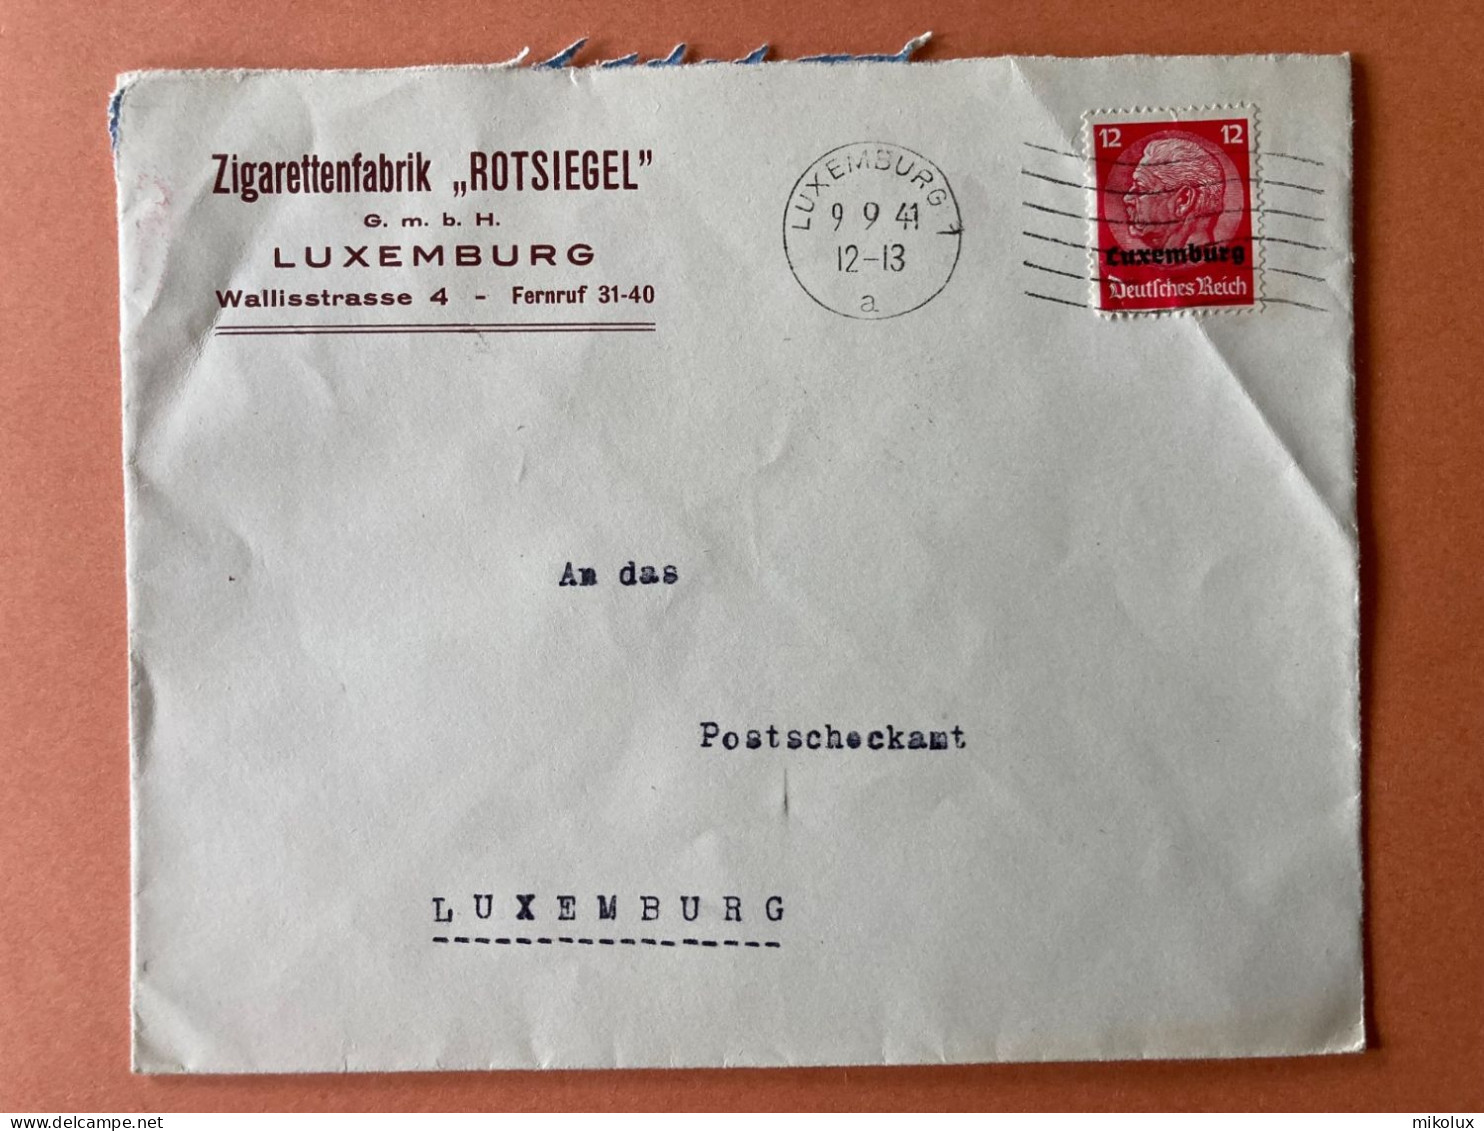 Luxemburg Zigarettenfabrik Rotsiegel   Briefumschlag 1941 - 1940-1944 German Occupation